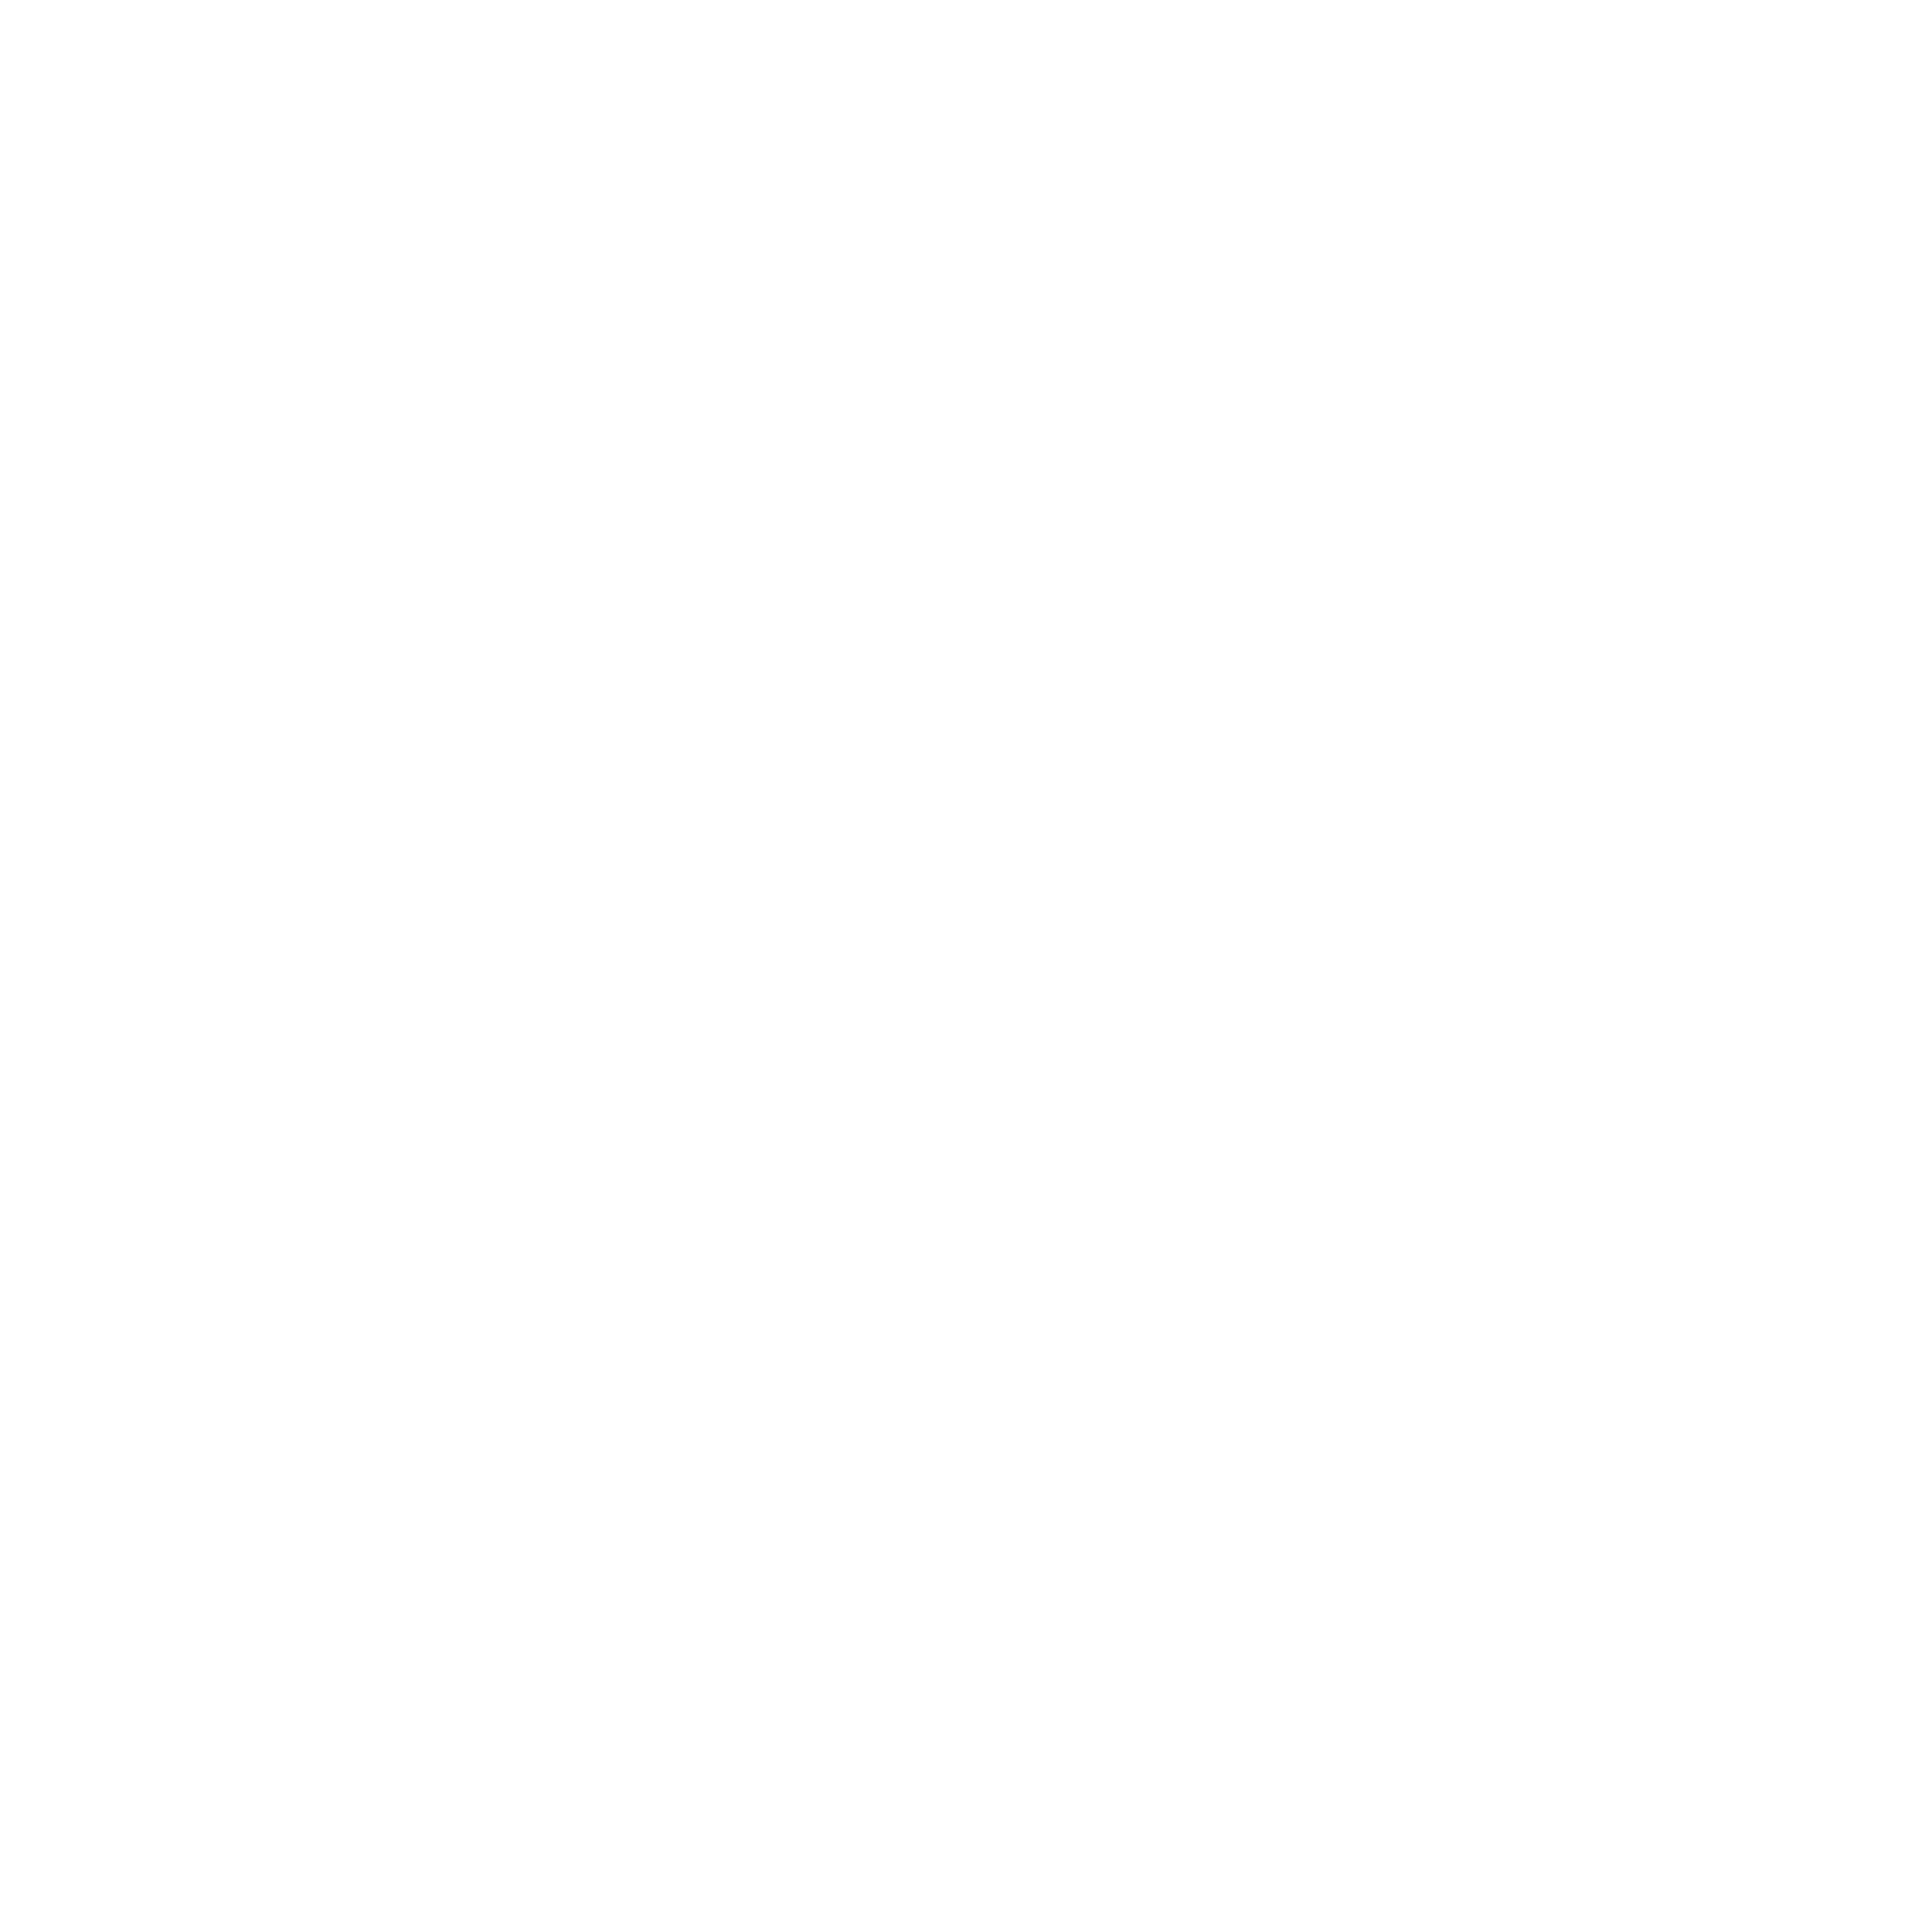 AniCura Kiel Wiemer logo